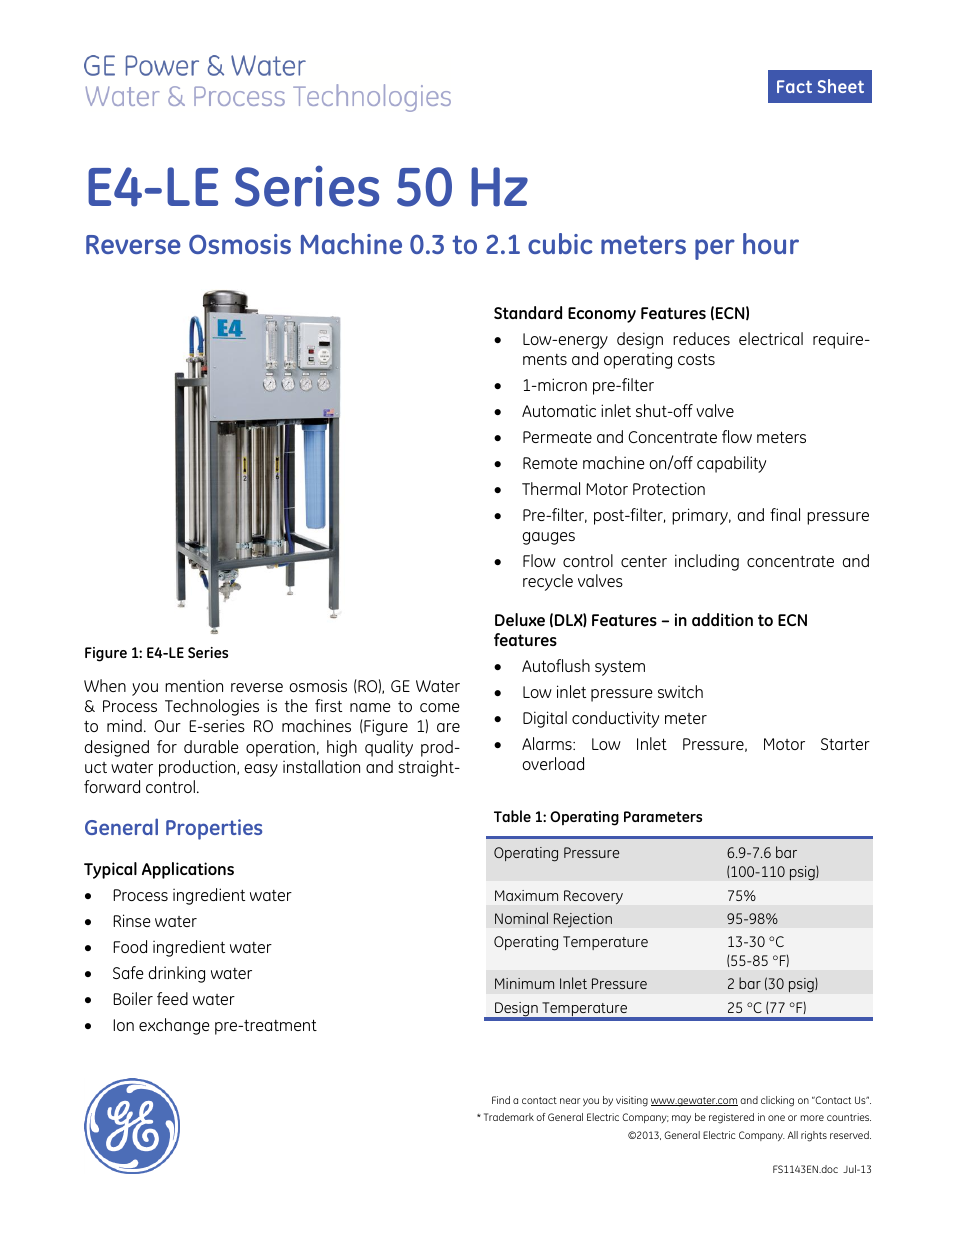 E-Series Reverse Osmosis - E4 LE 50 Hz